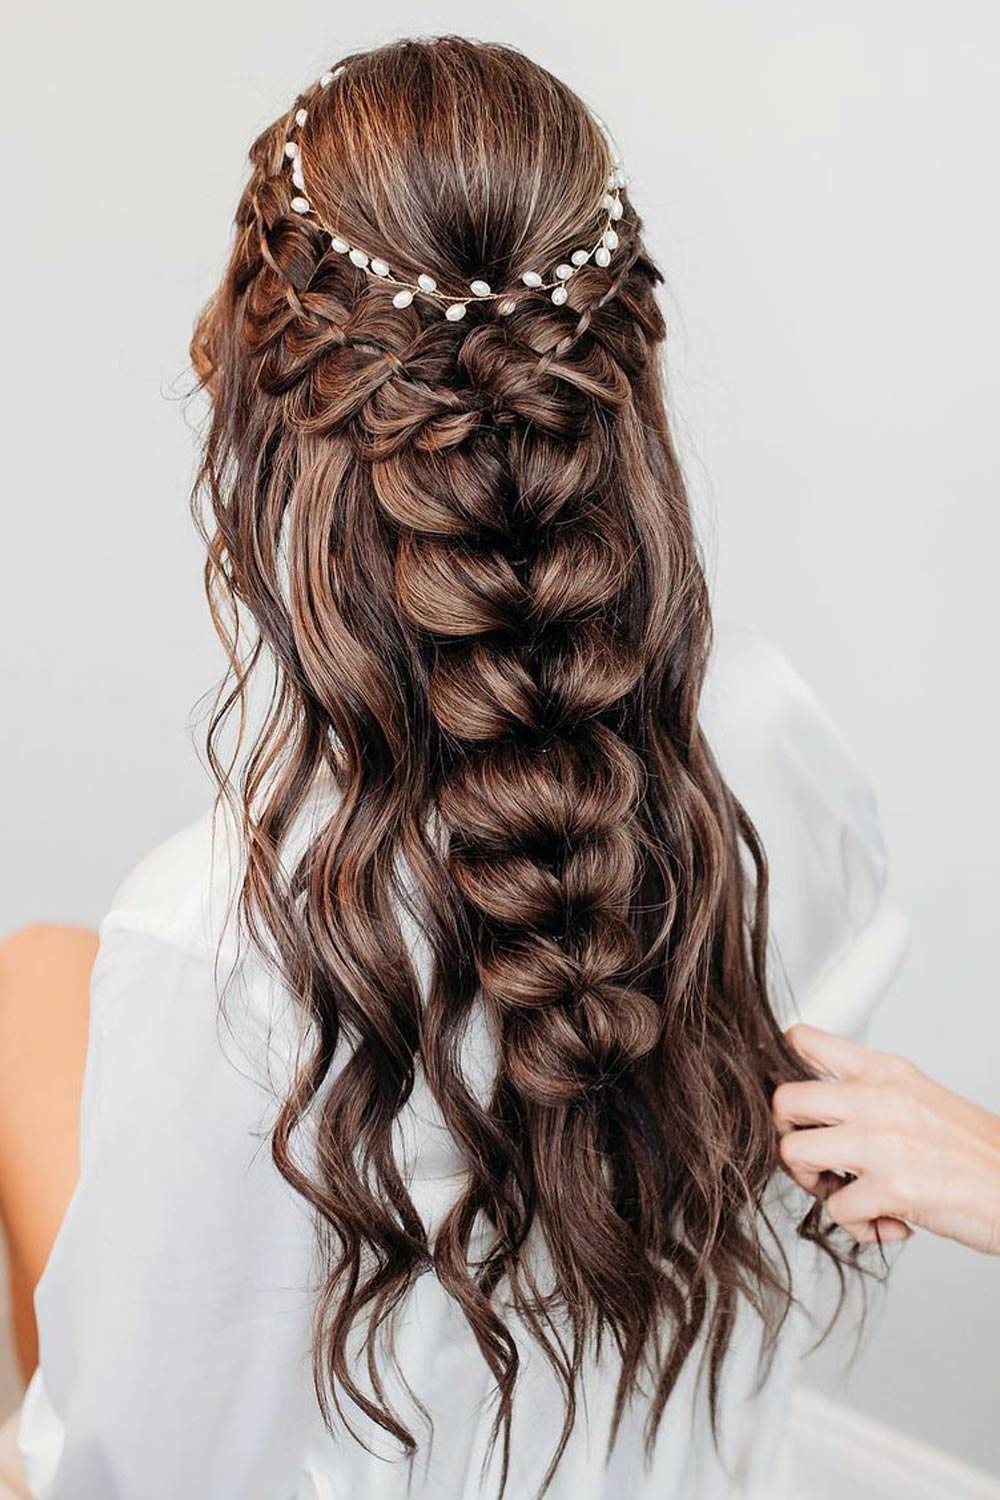 50 Elegant Wedding Hairstyles for Long Hair - Love Hairstyles